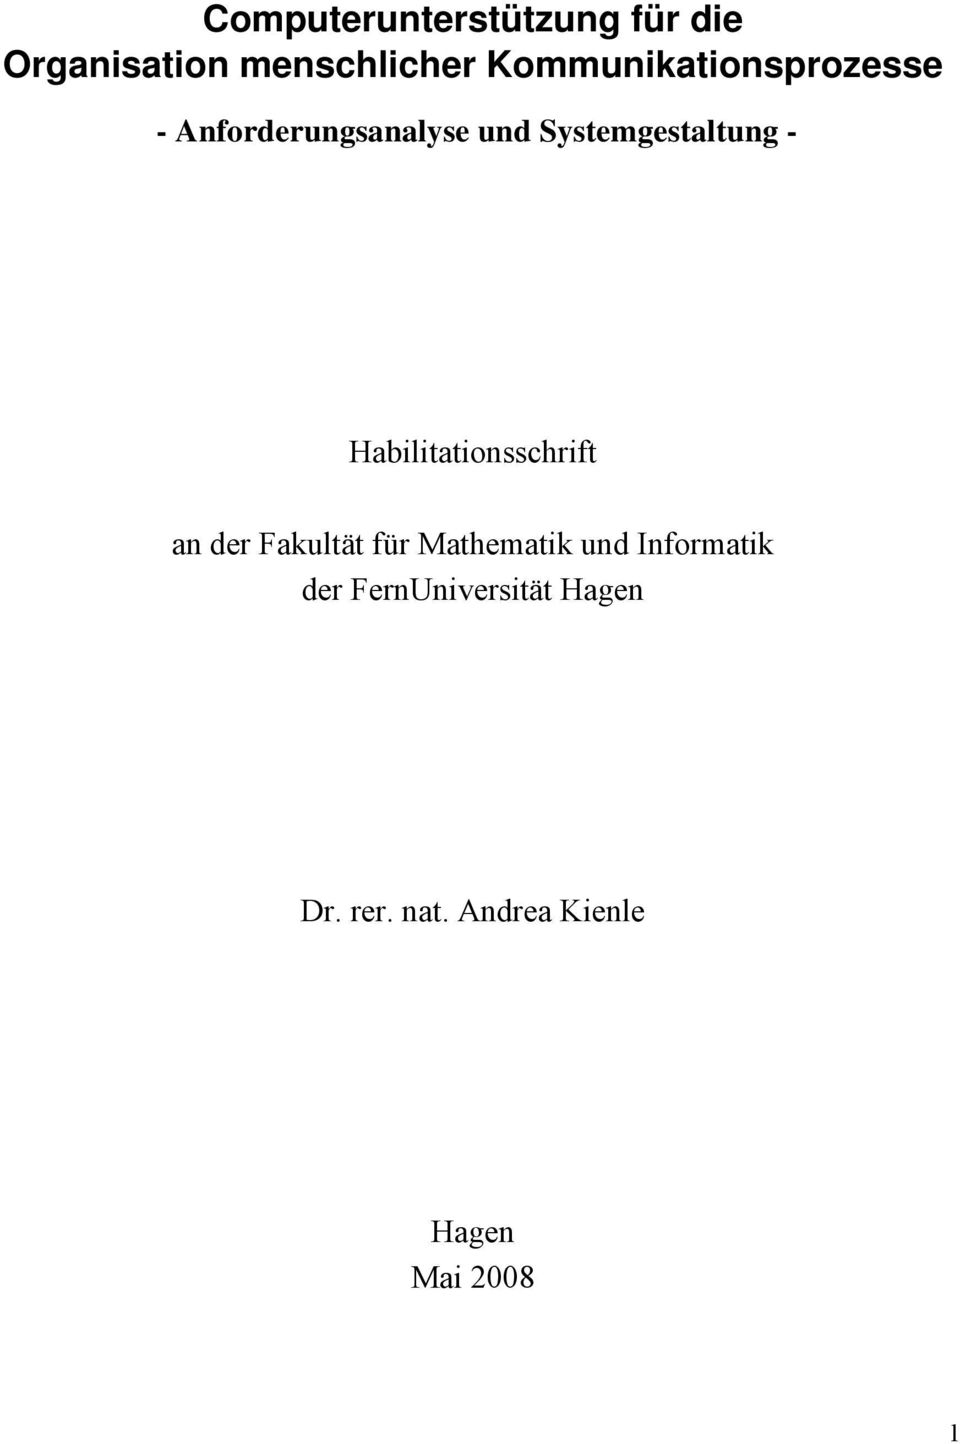 - Habilitationsschrift an der Fakultät für Mathematik und